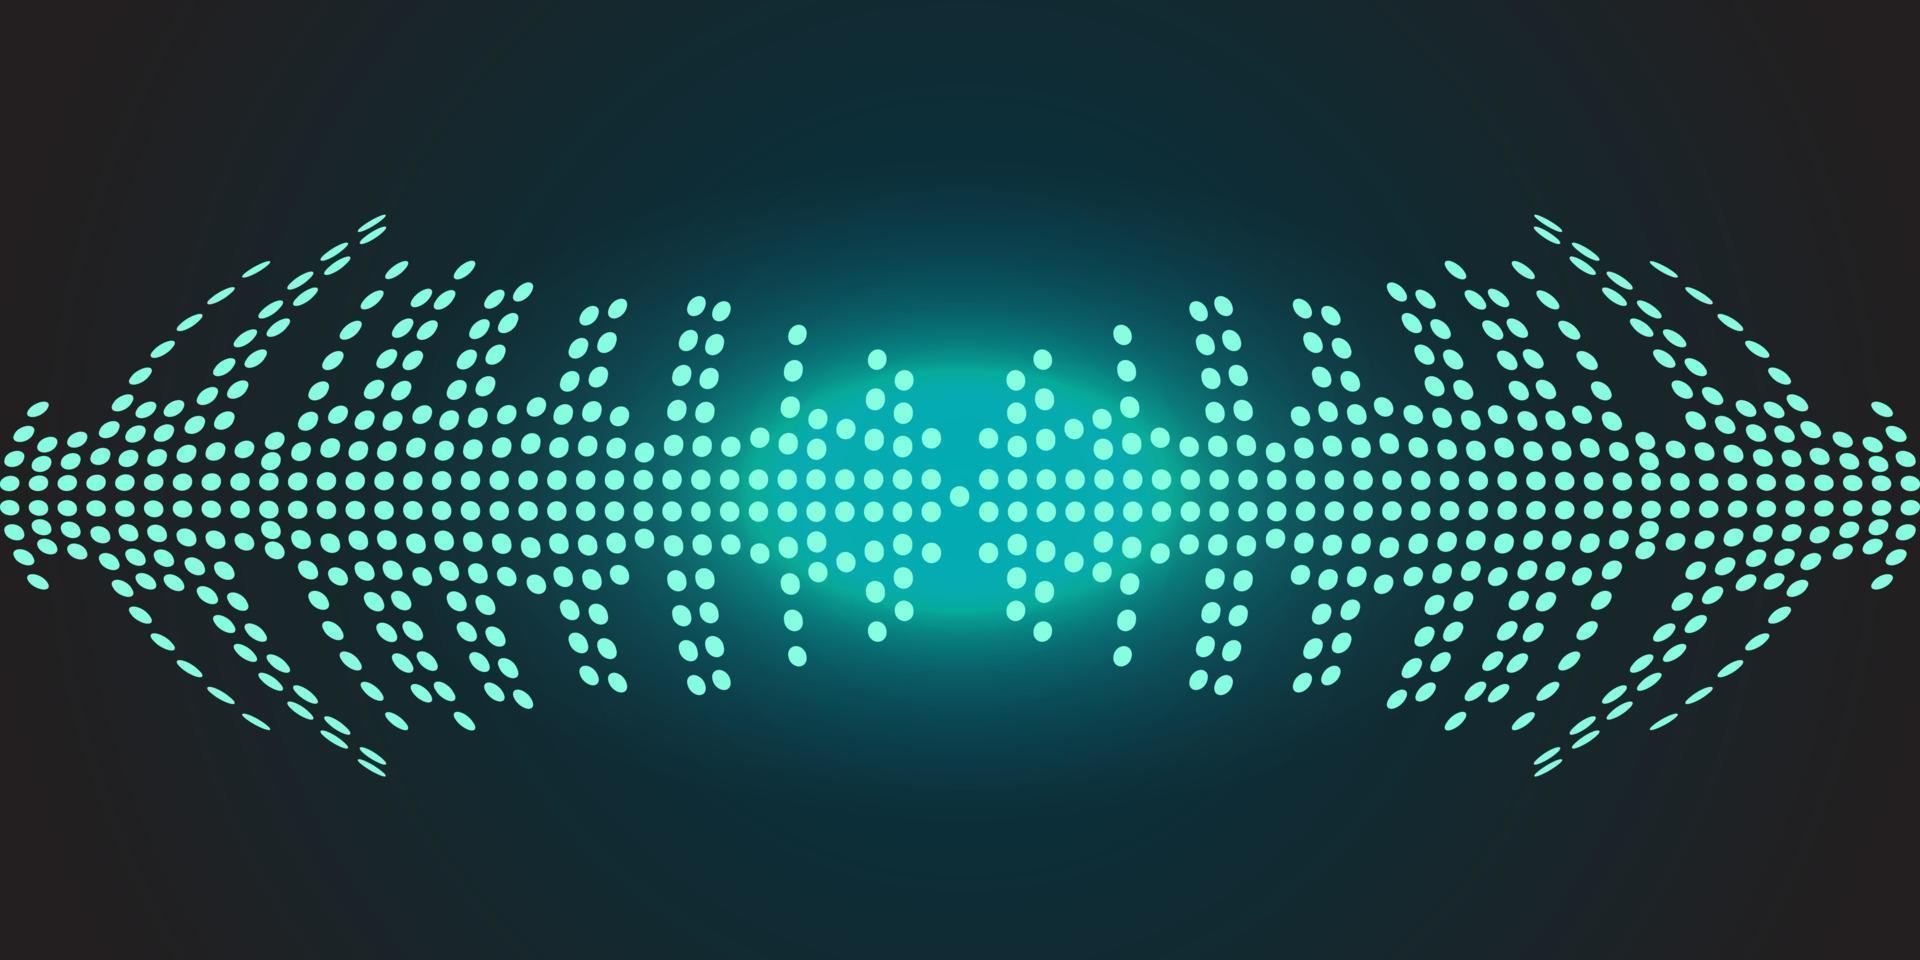 geluidsgolven oscillerend donkerblauw licht. vectorillustratie op een donkere achtergrond vector